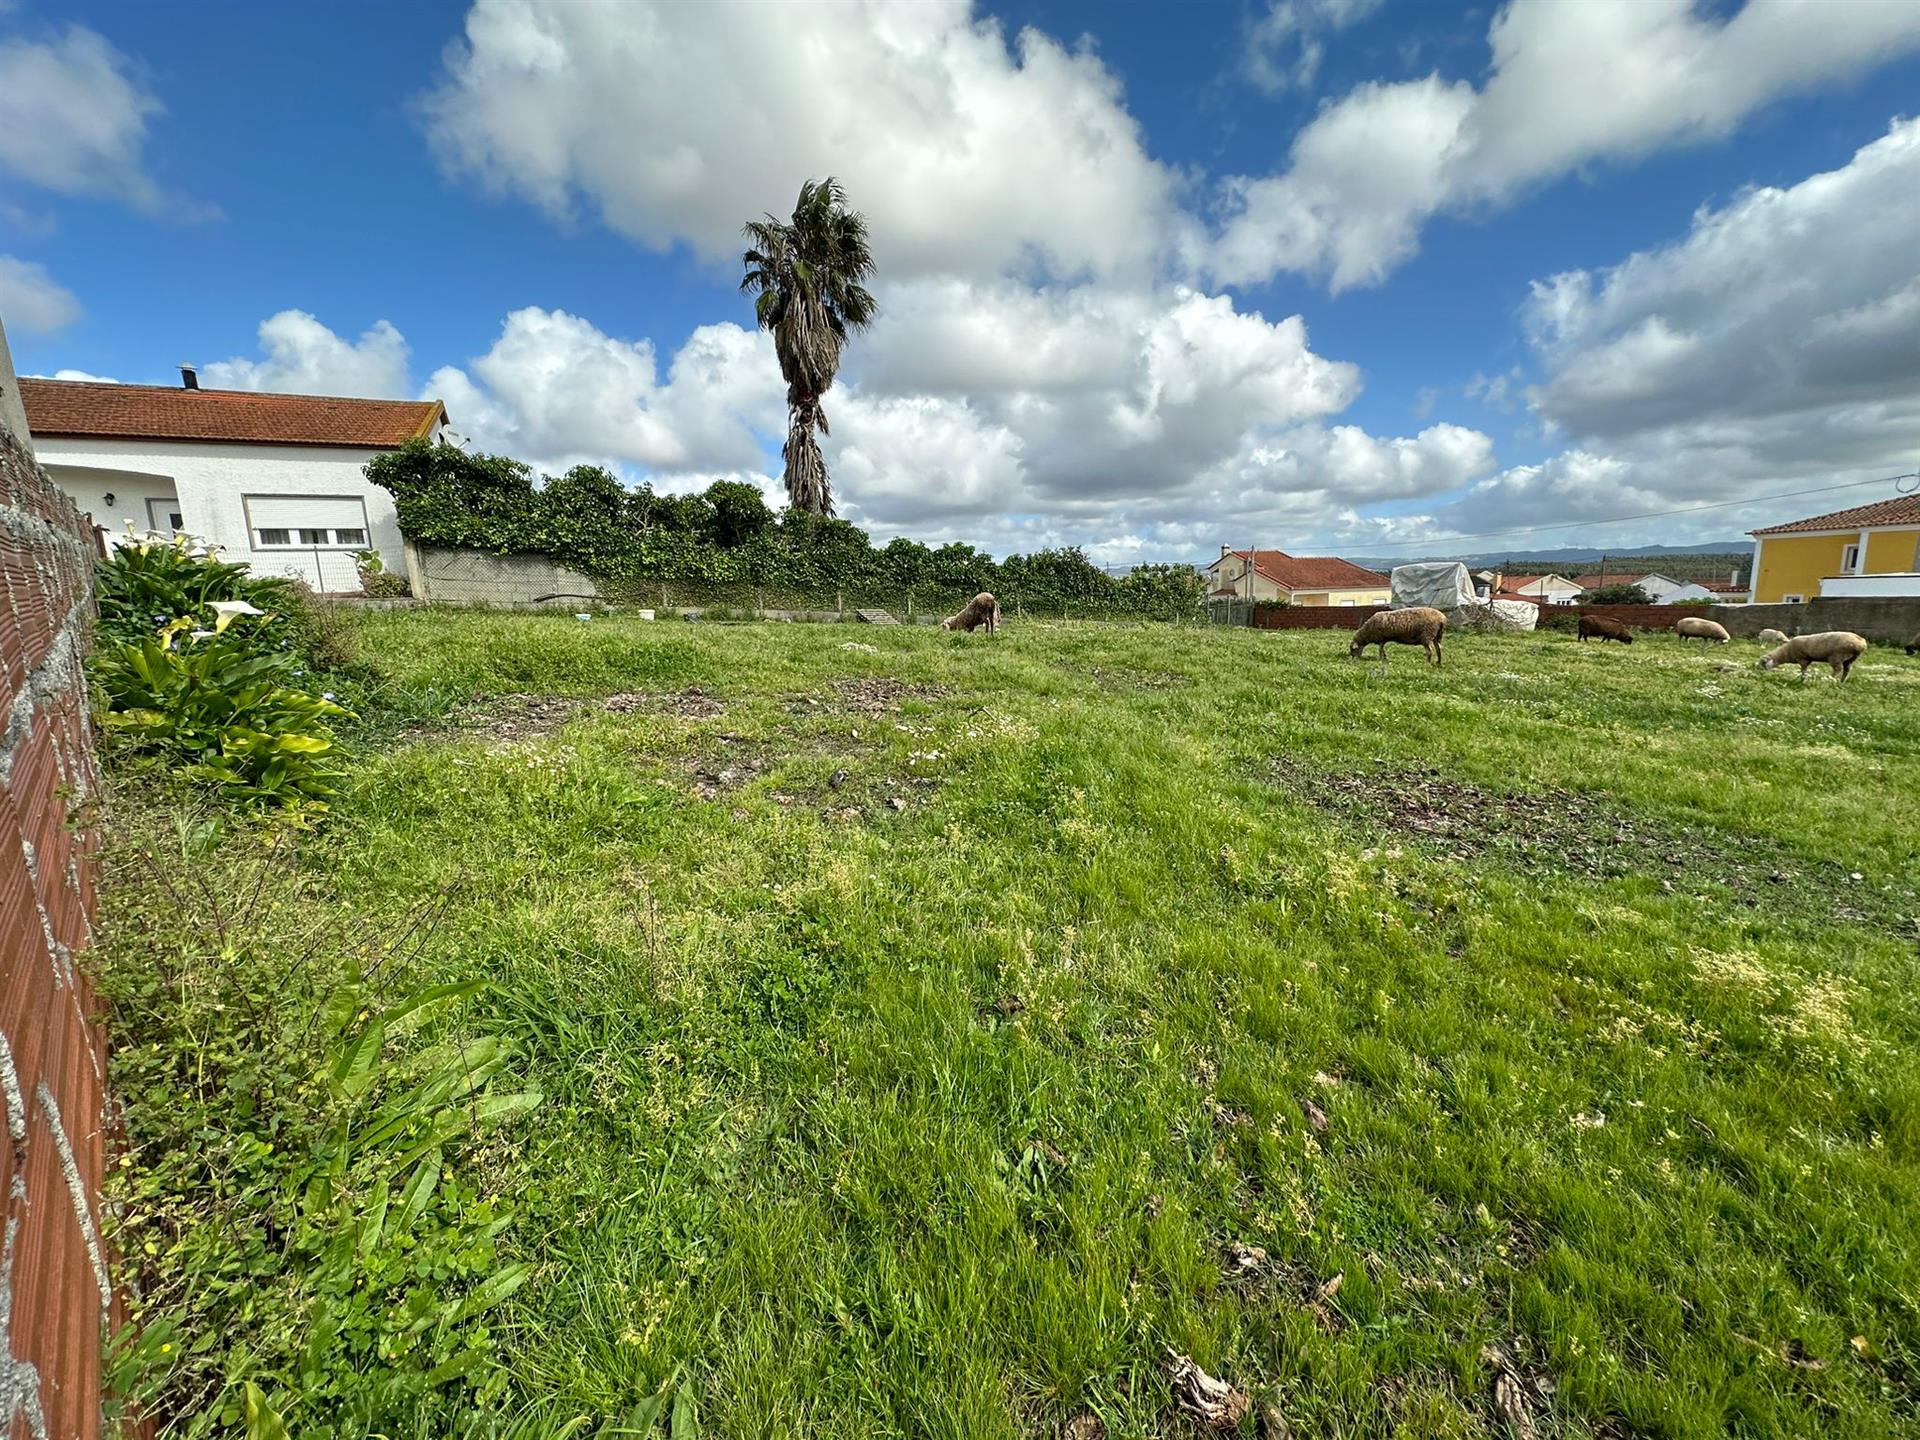 Parcela de terreno para desarrollo de viviendas, centro de la ciudad, cerca de Torres Vedras